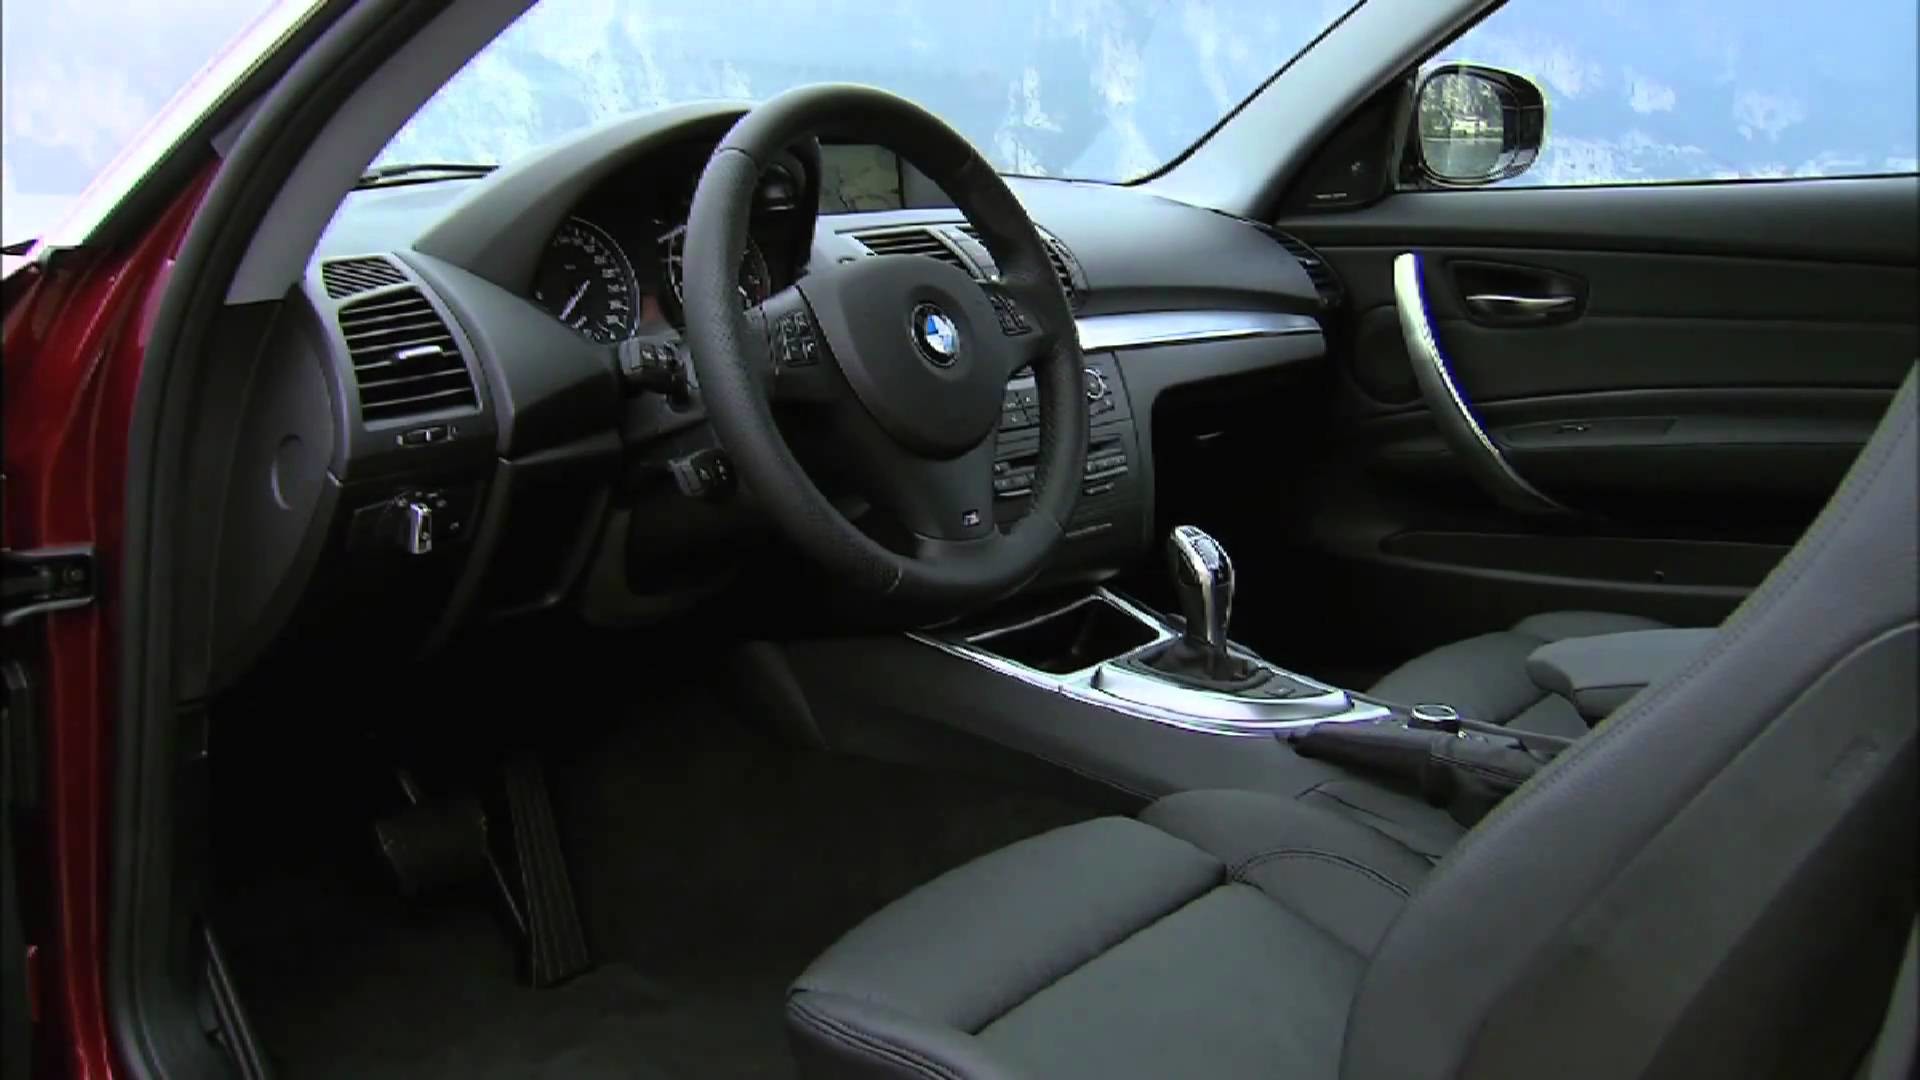 1920x1080 Redesigned 2012 BMW 135i Coupe Exterior and Interior Design